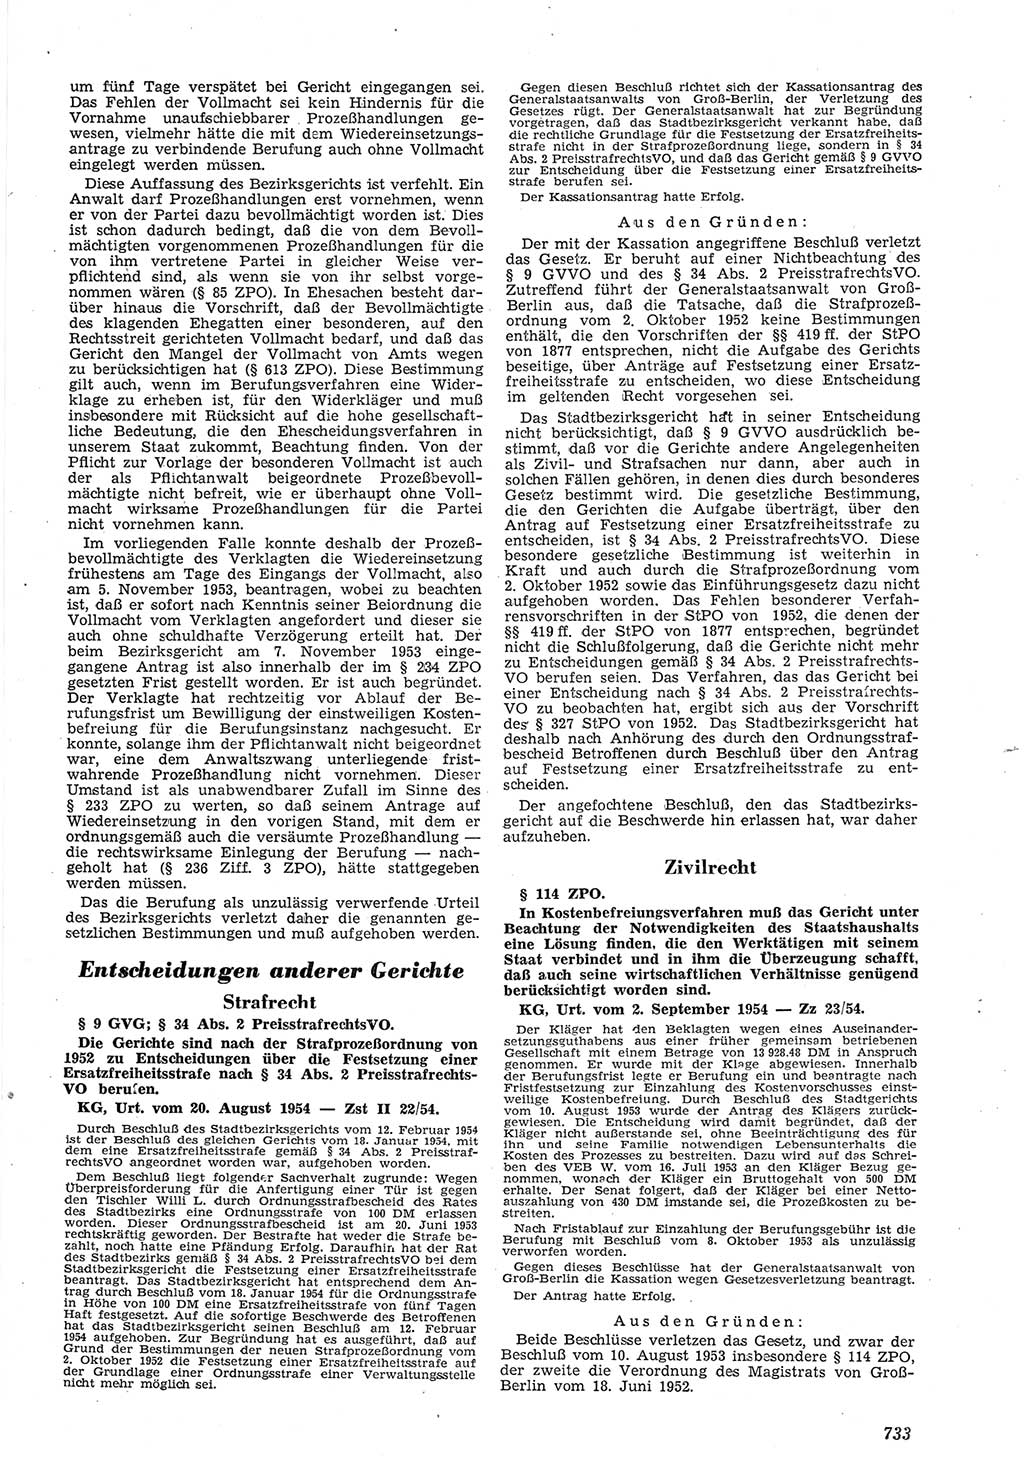 Neue Justiz (NJ), Zeitschrift für Recht und Rechtswissenschaft [Deutsche Demokratische Republik (DDR)], 8. Jahrgang 1954, Seite 733 (NJ DDR 1954, S. 733)